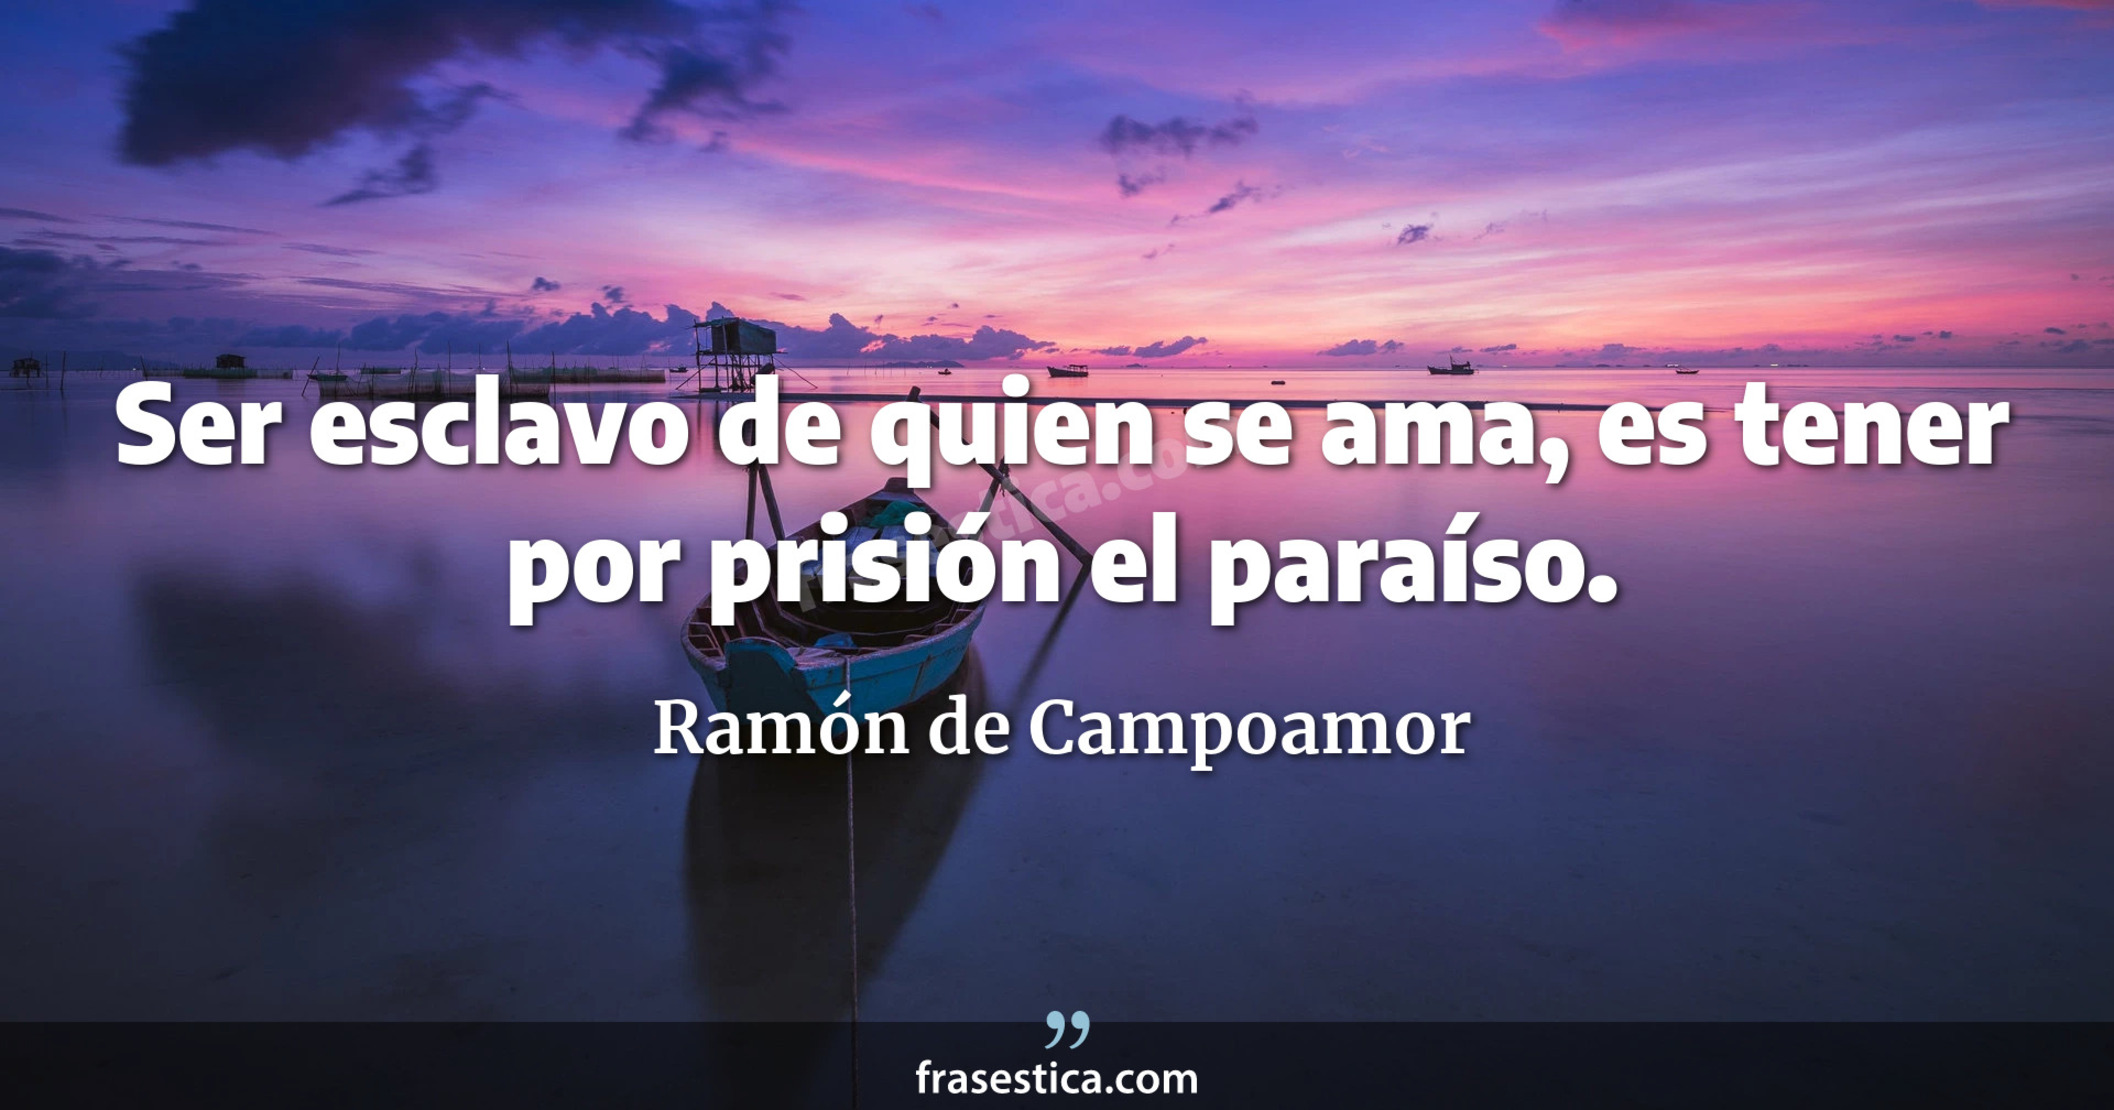 Ser esclavo de quien se ama, es tener por prisión el paraíso. - Ramón de Campoamor